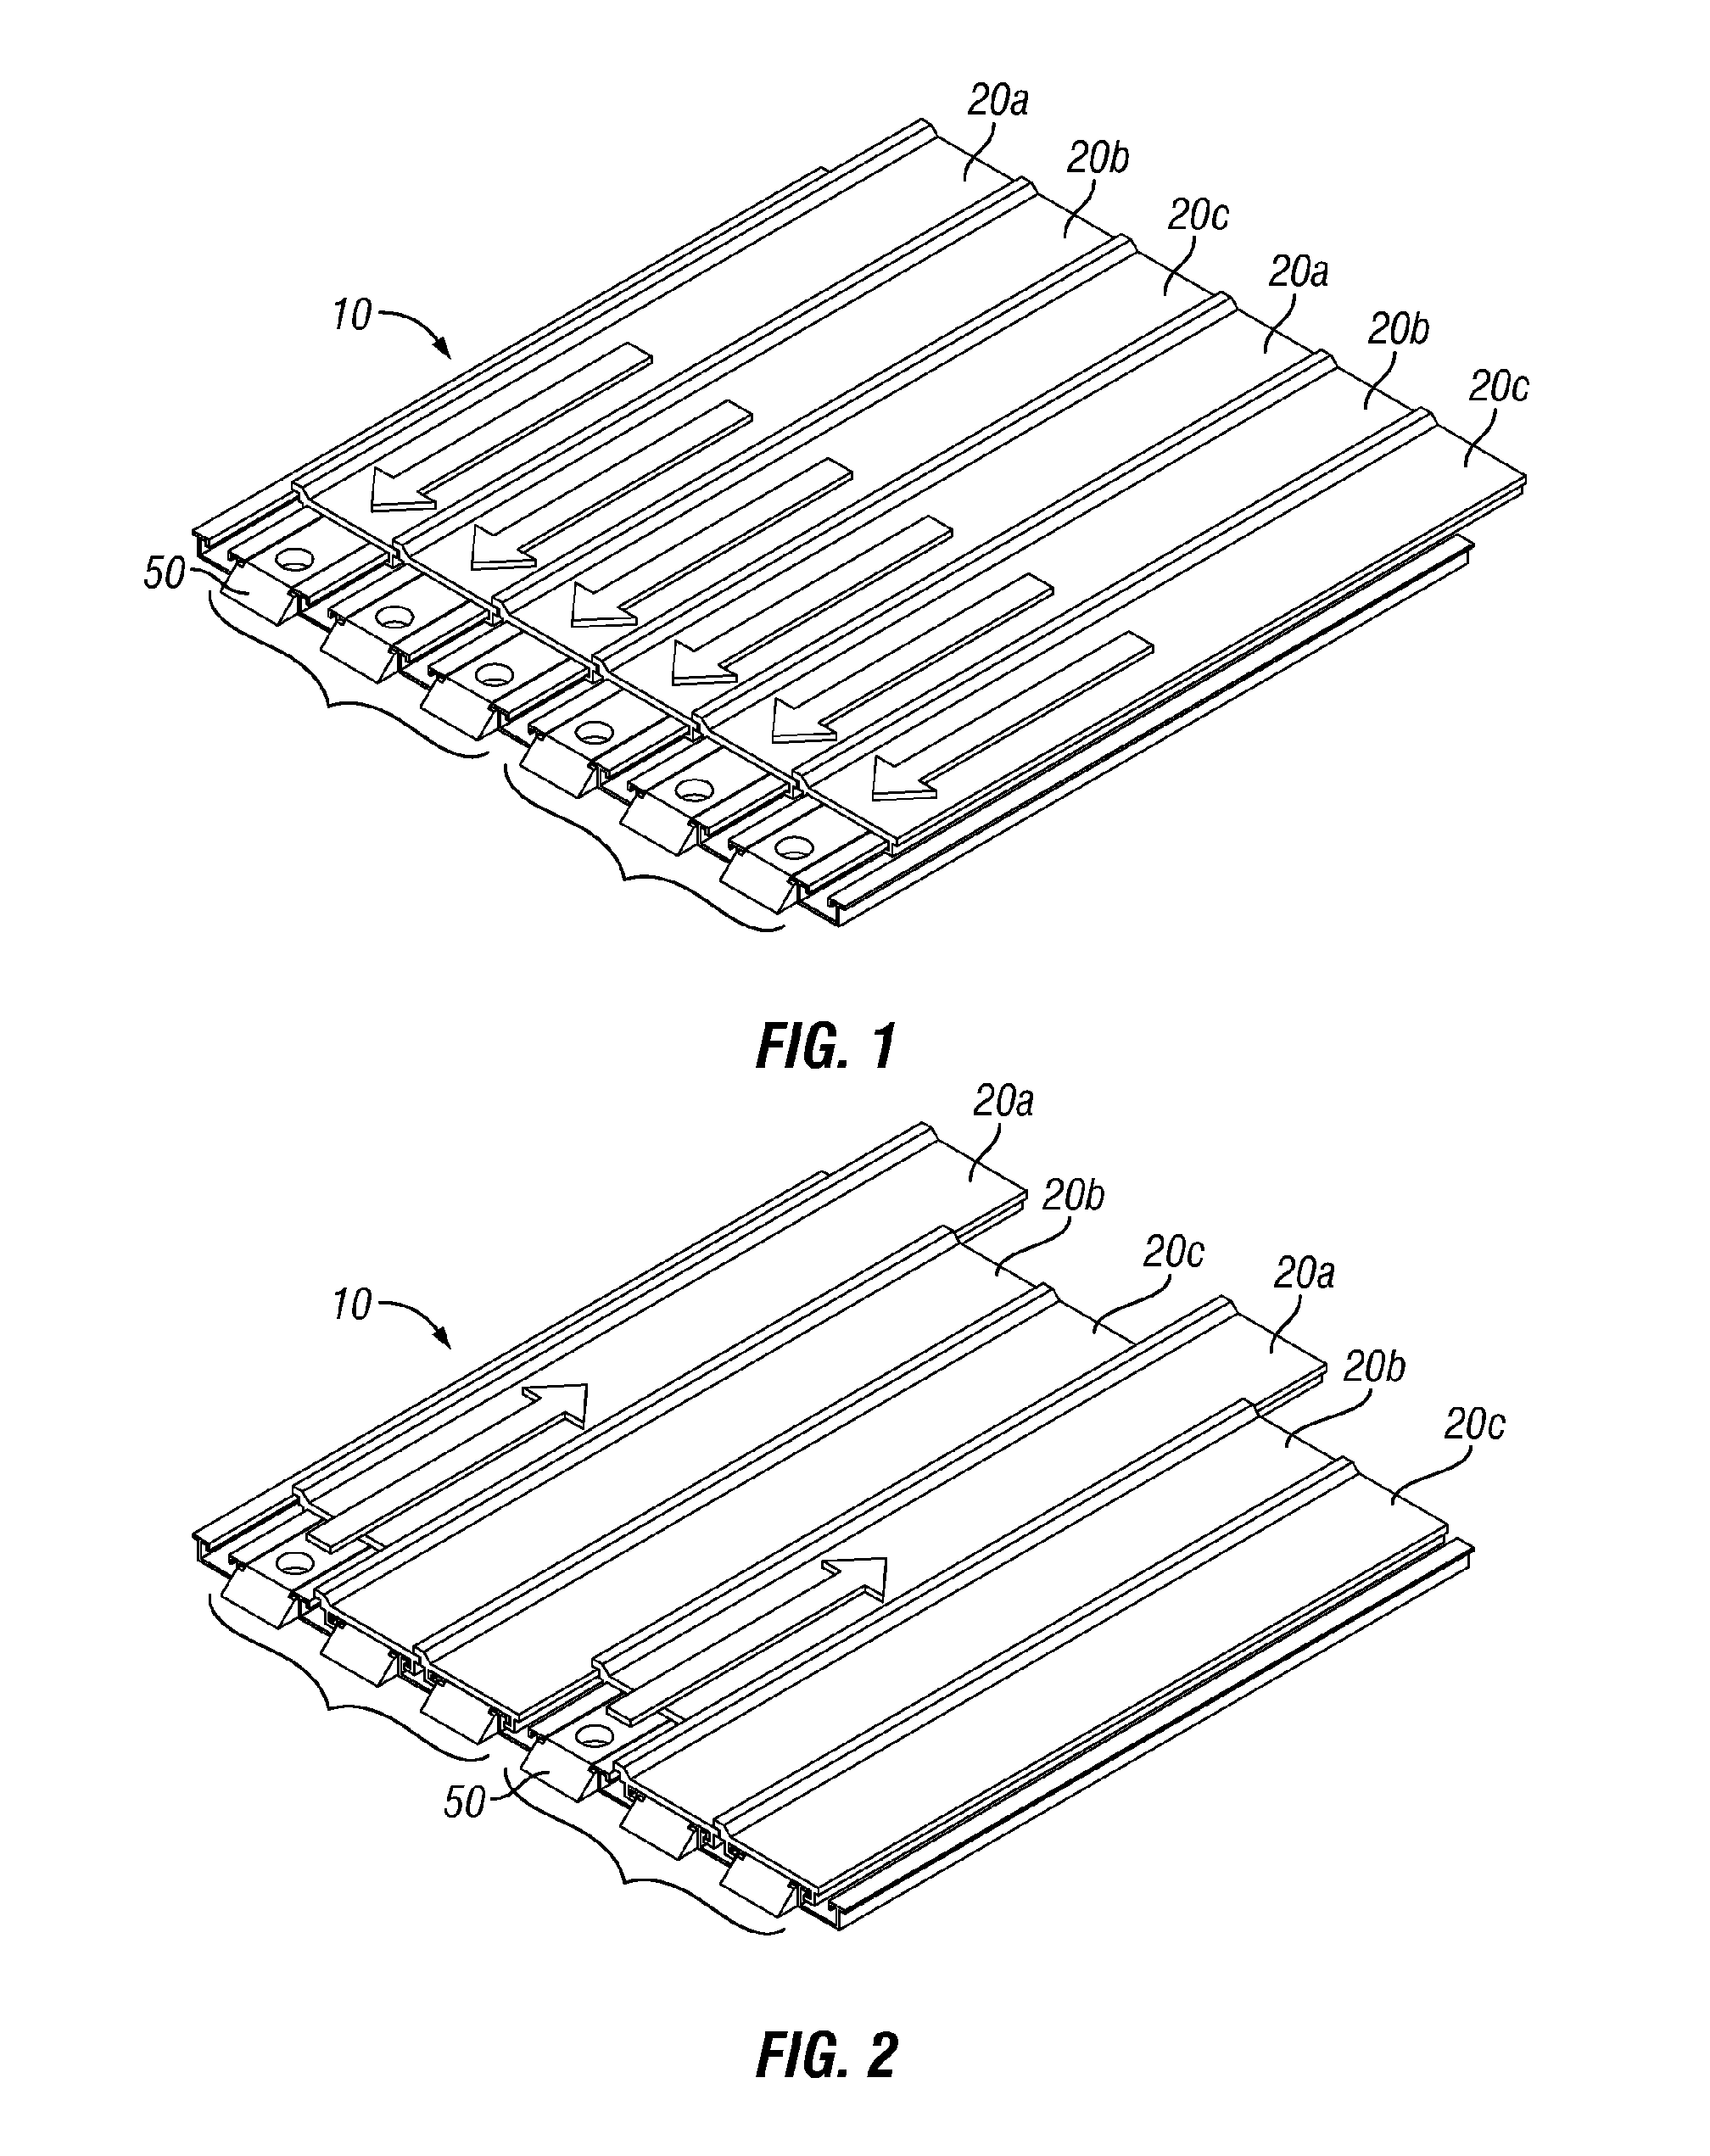 Bearingless reciprocating slat-type conveyor assemblies